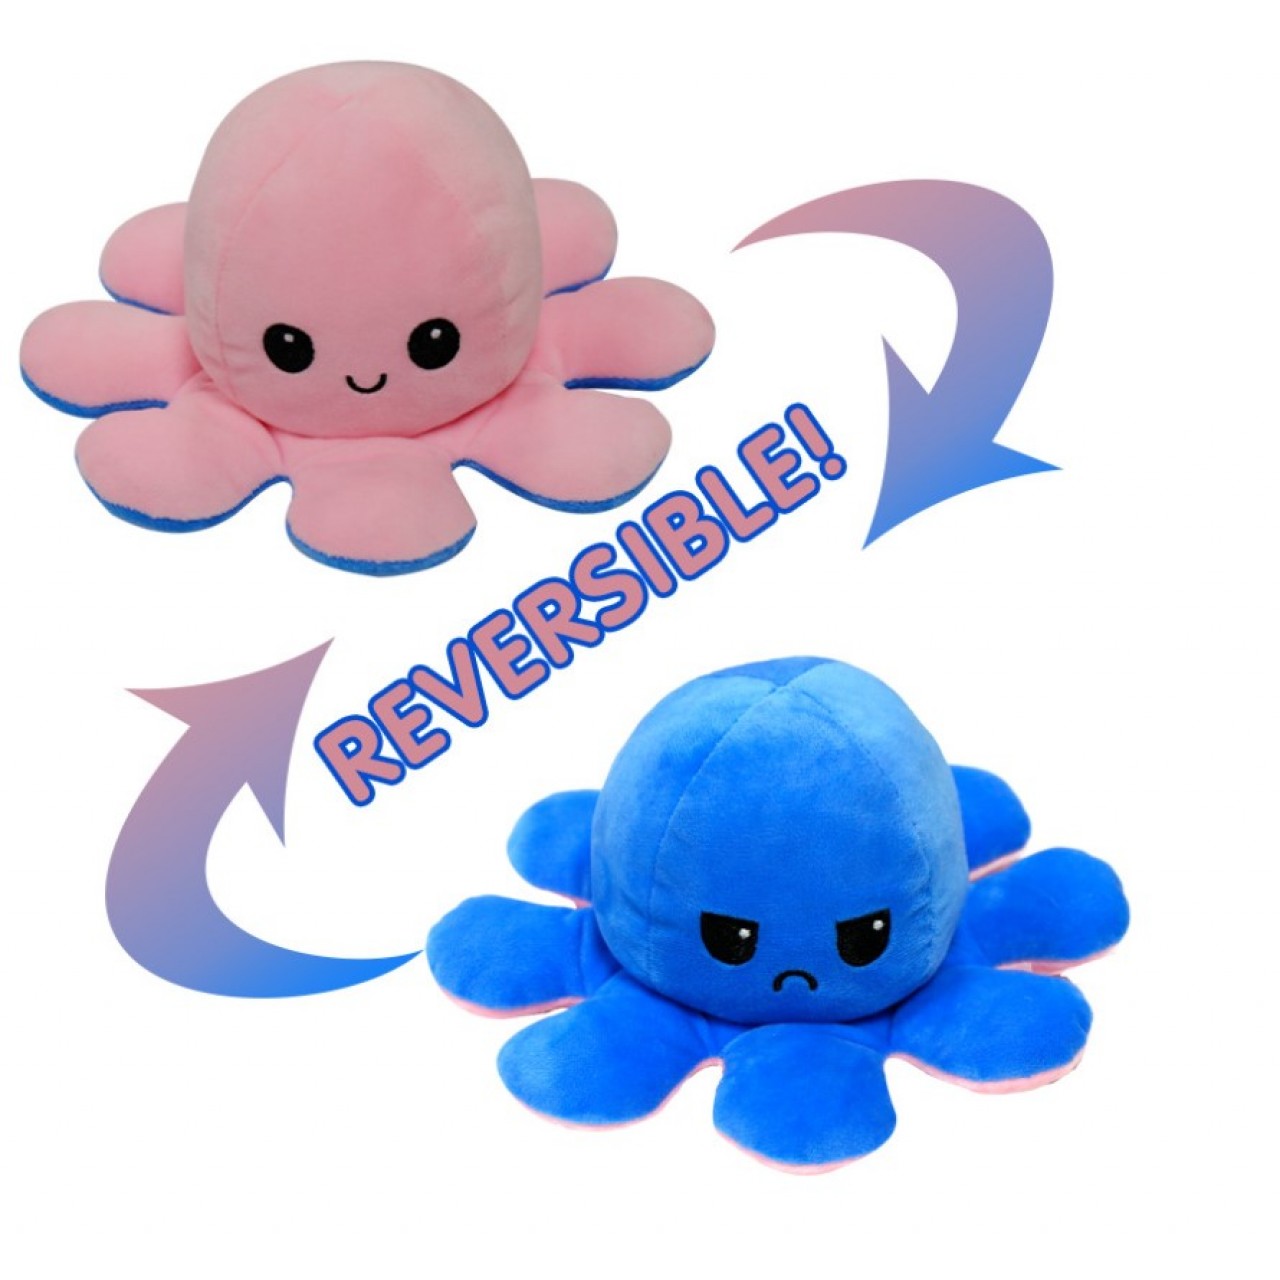 Χταπόδι διπλής όψης λούτρινο emotional reversible octopus plush 20 εκ - 5237 - Μπλε / Ροζ